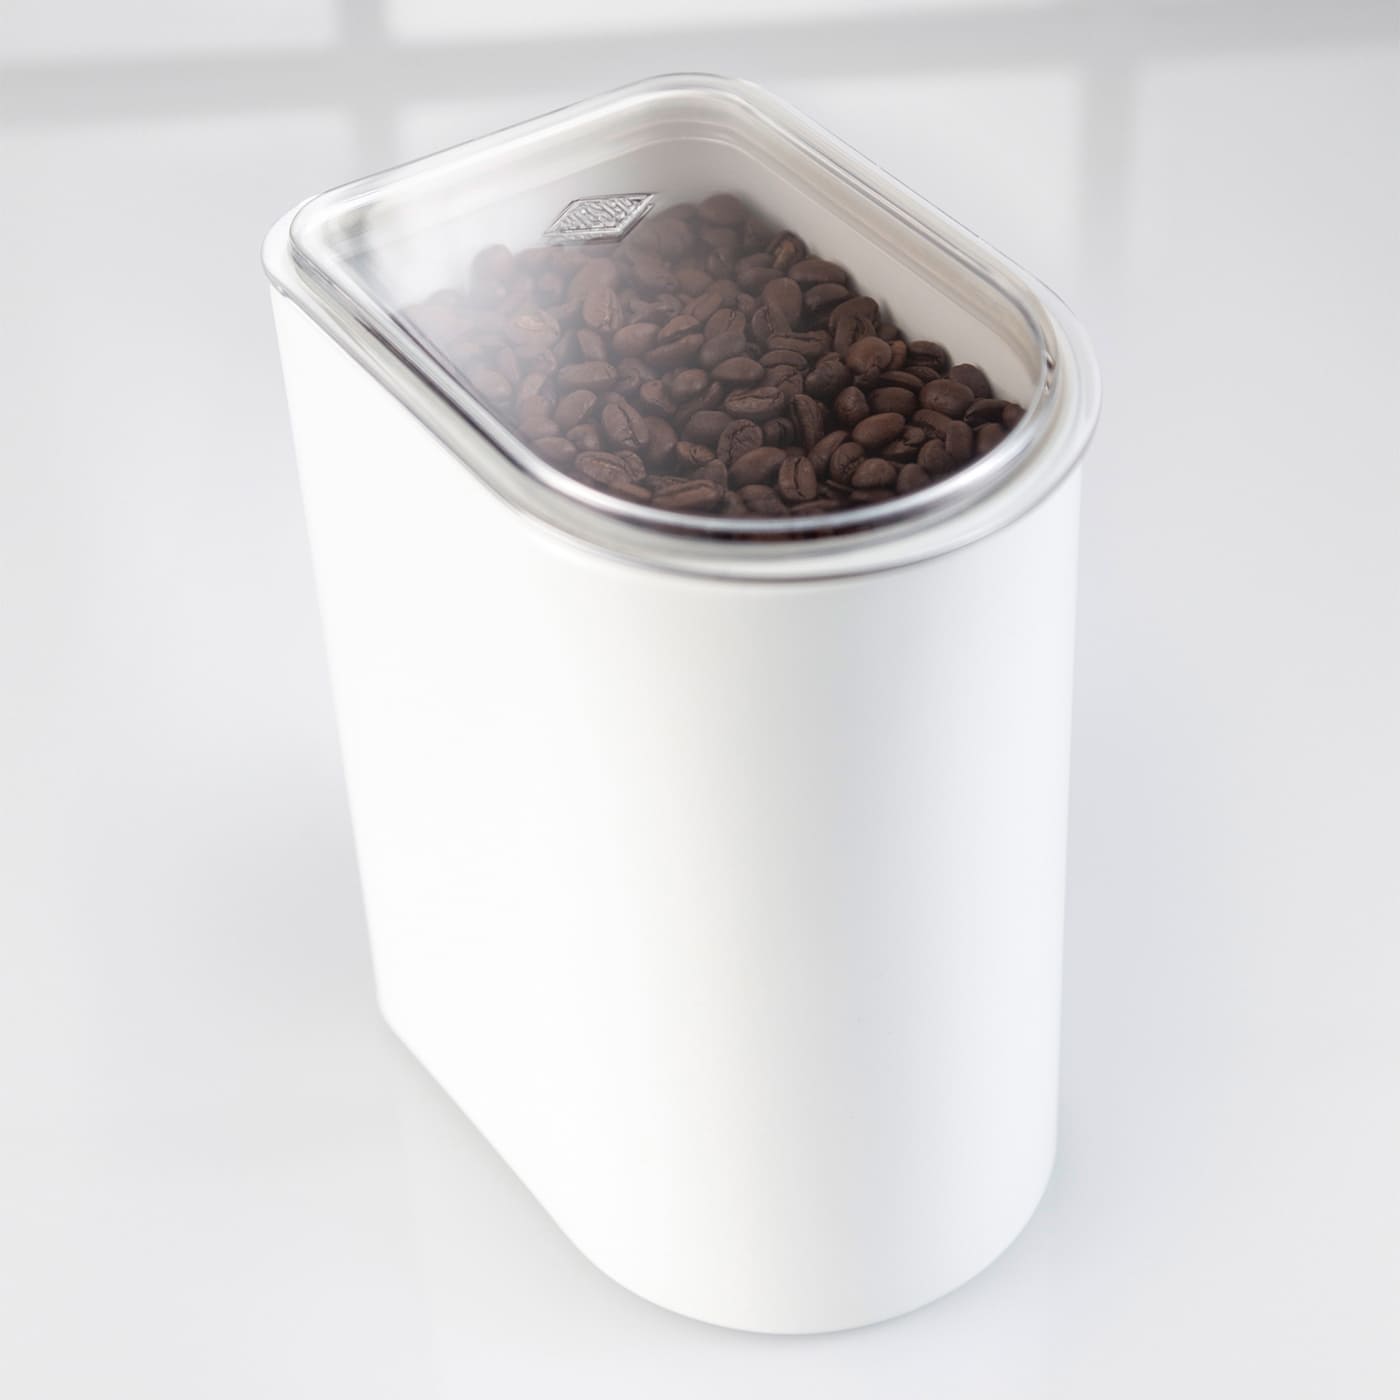 U-förmige Vorratsdose mit 3 Liter Fassungsvermögen mit Kaffeebohnen gefüllt